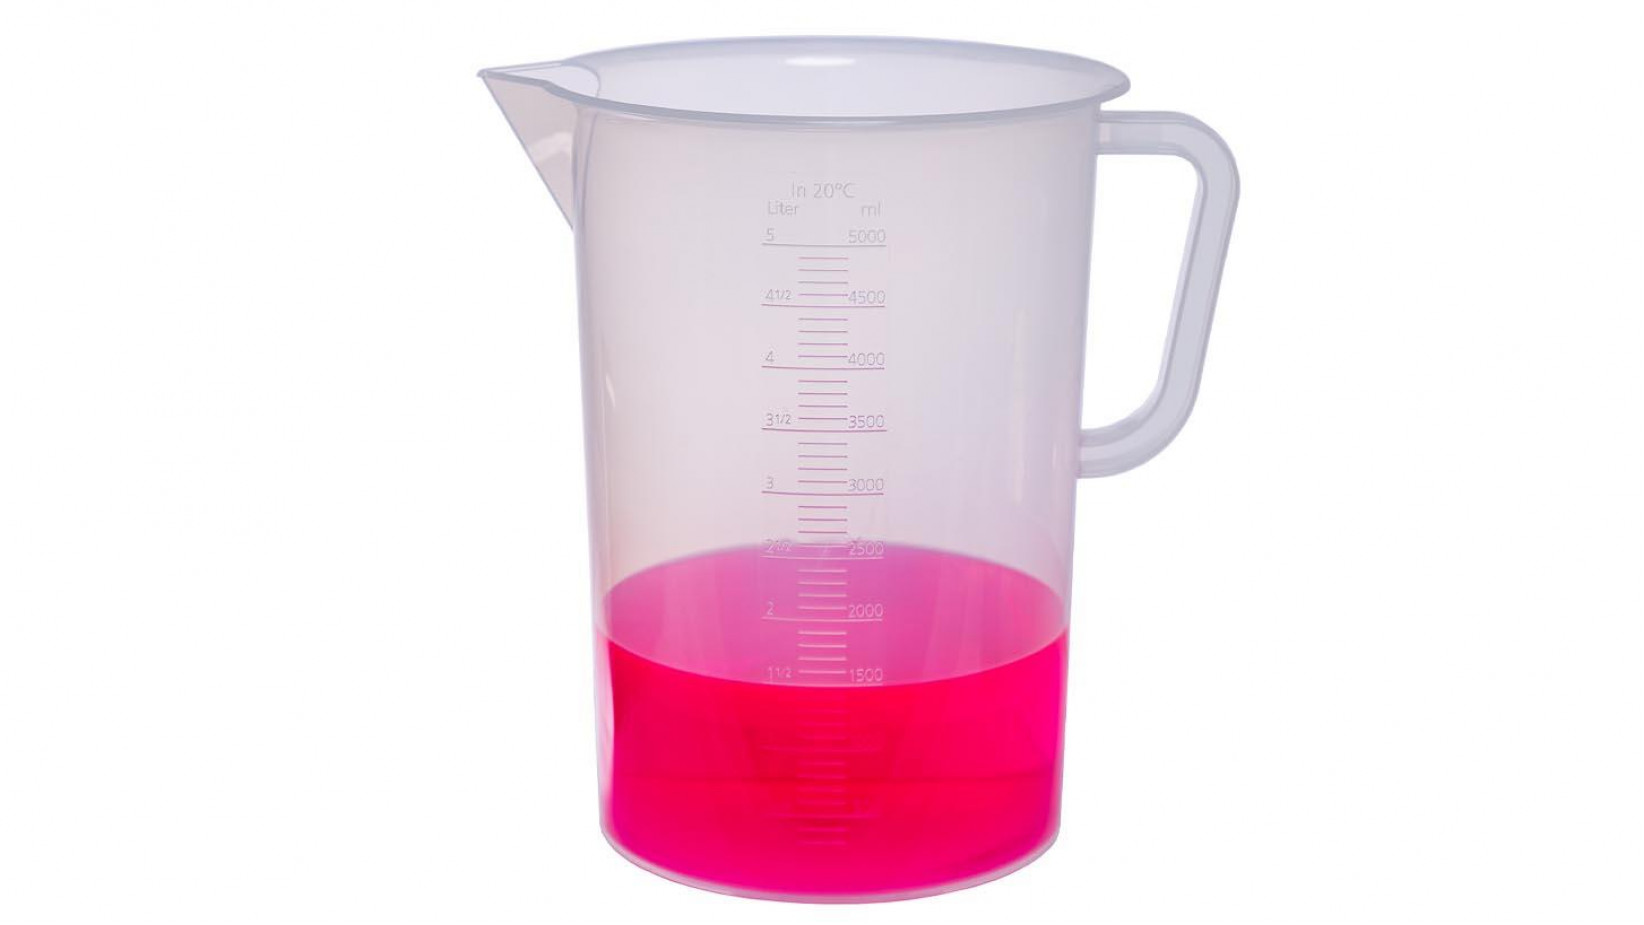 Messbecher 5 Liter Chemie Zubehör